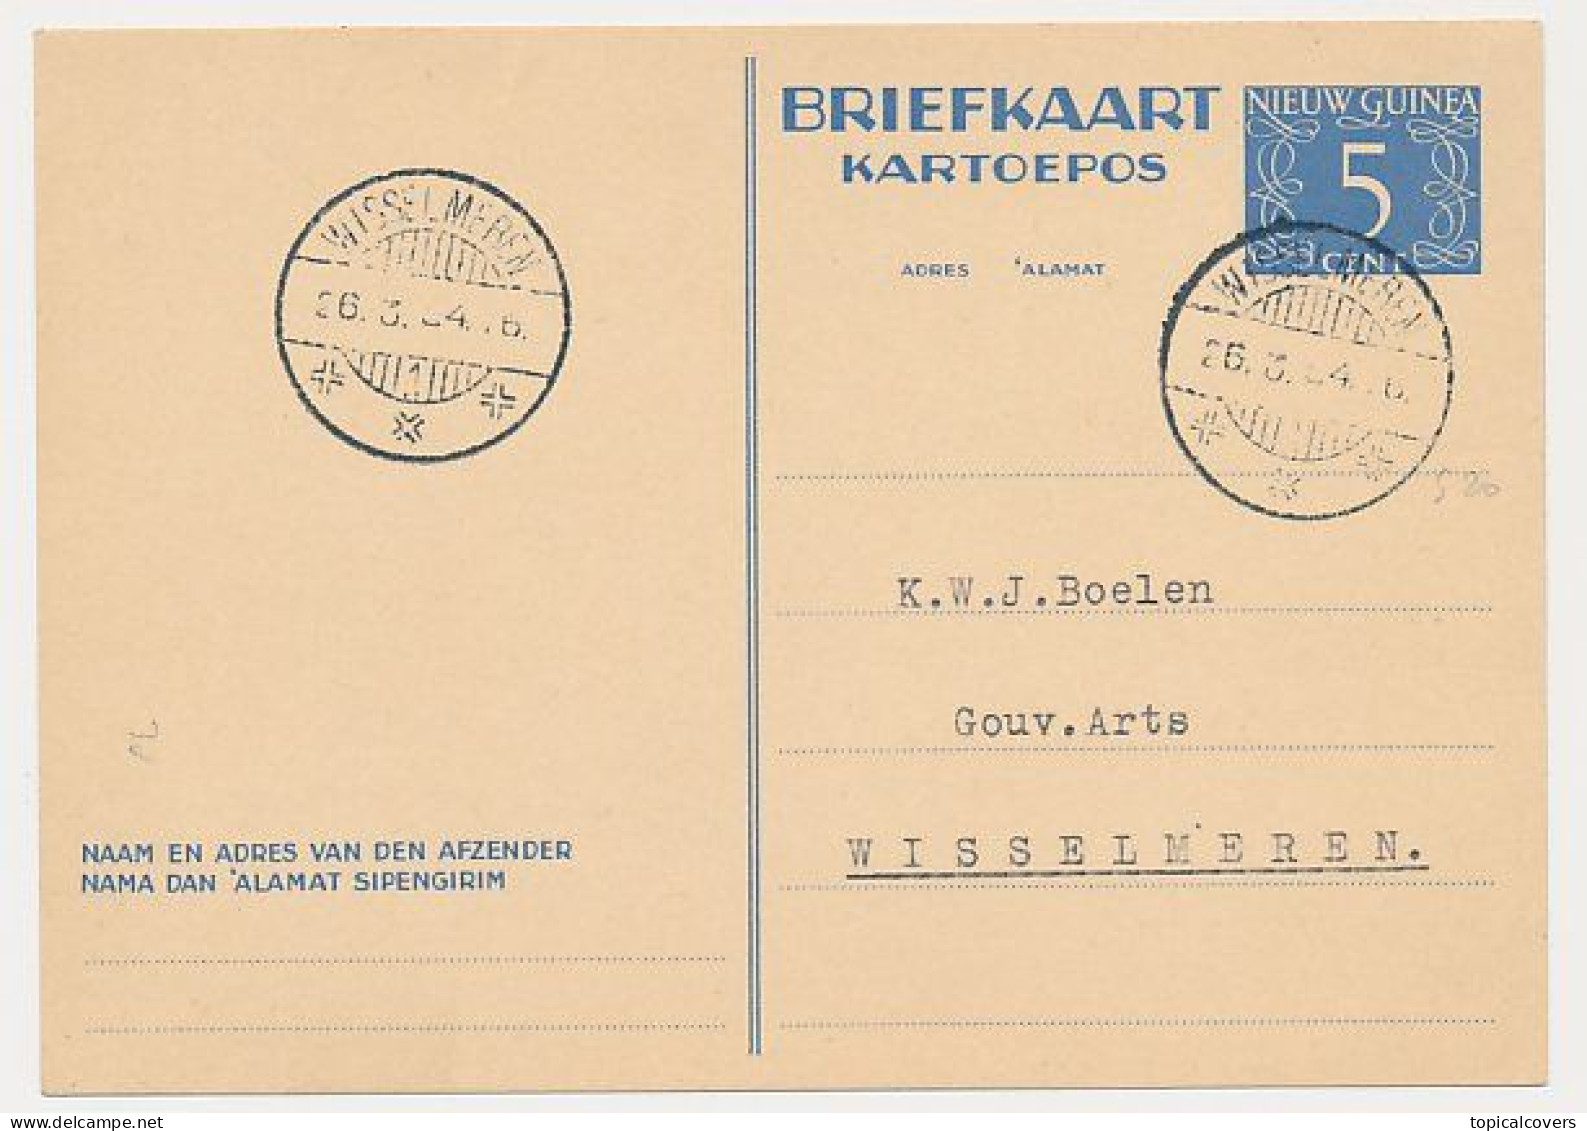 Nederlands Nieuw Guinea / NNG - Briefkaart G. 1 Wisselmeren 1954 - Nueva Guinea Holandesa